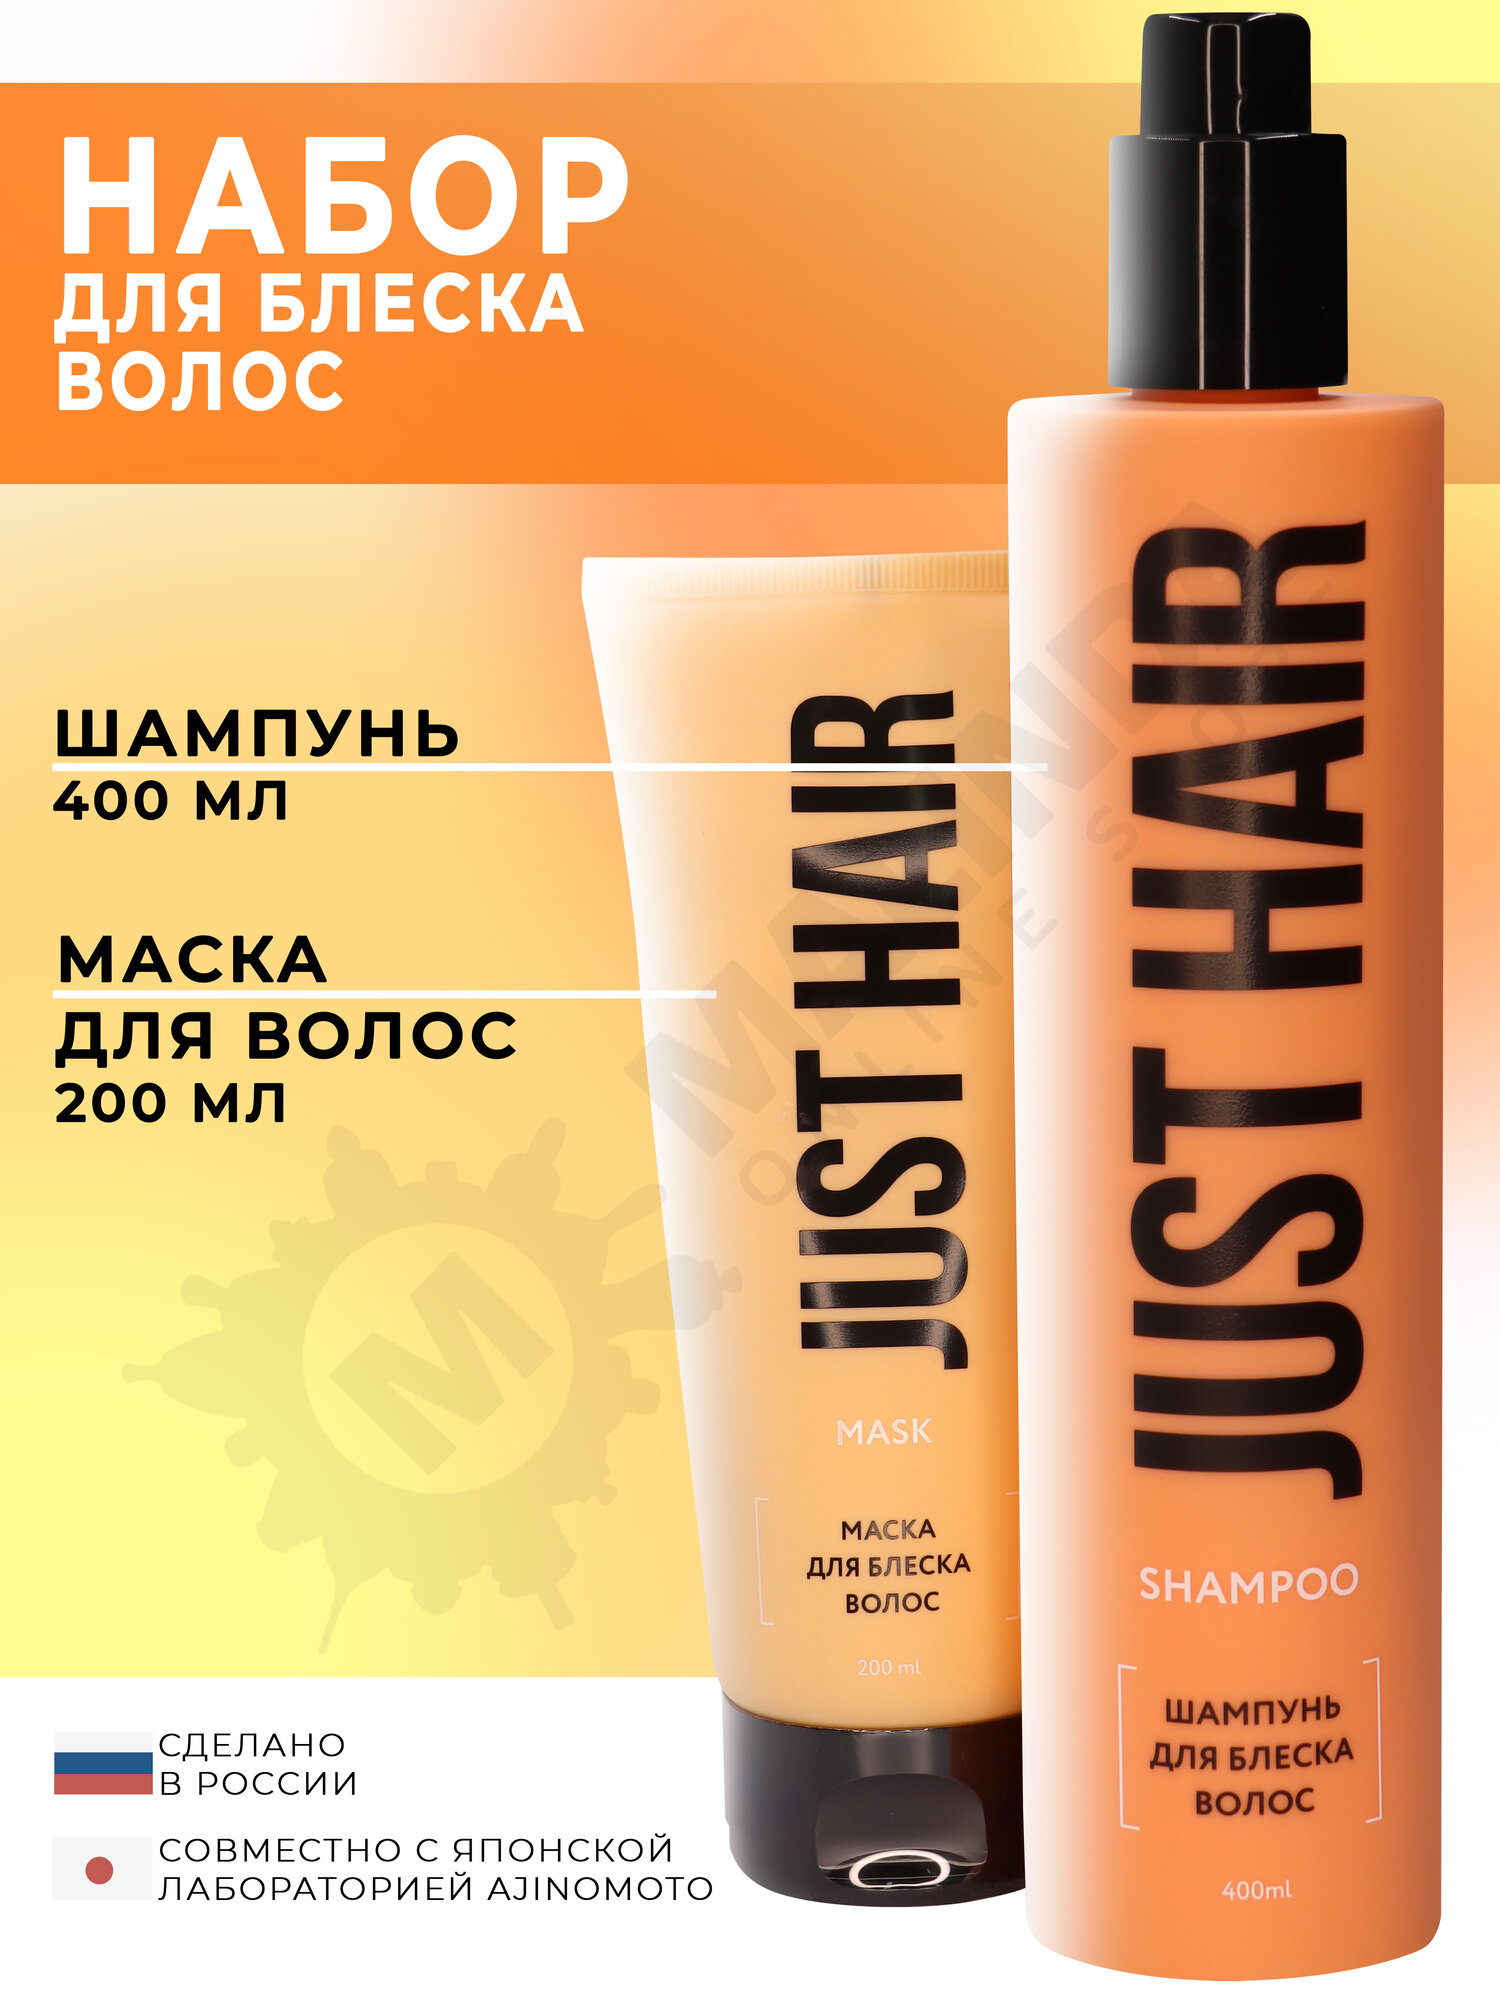 JUST HAIR Набор косметики для ухода за волосами № 8 (шампунь, маска для волос)